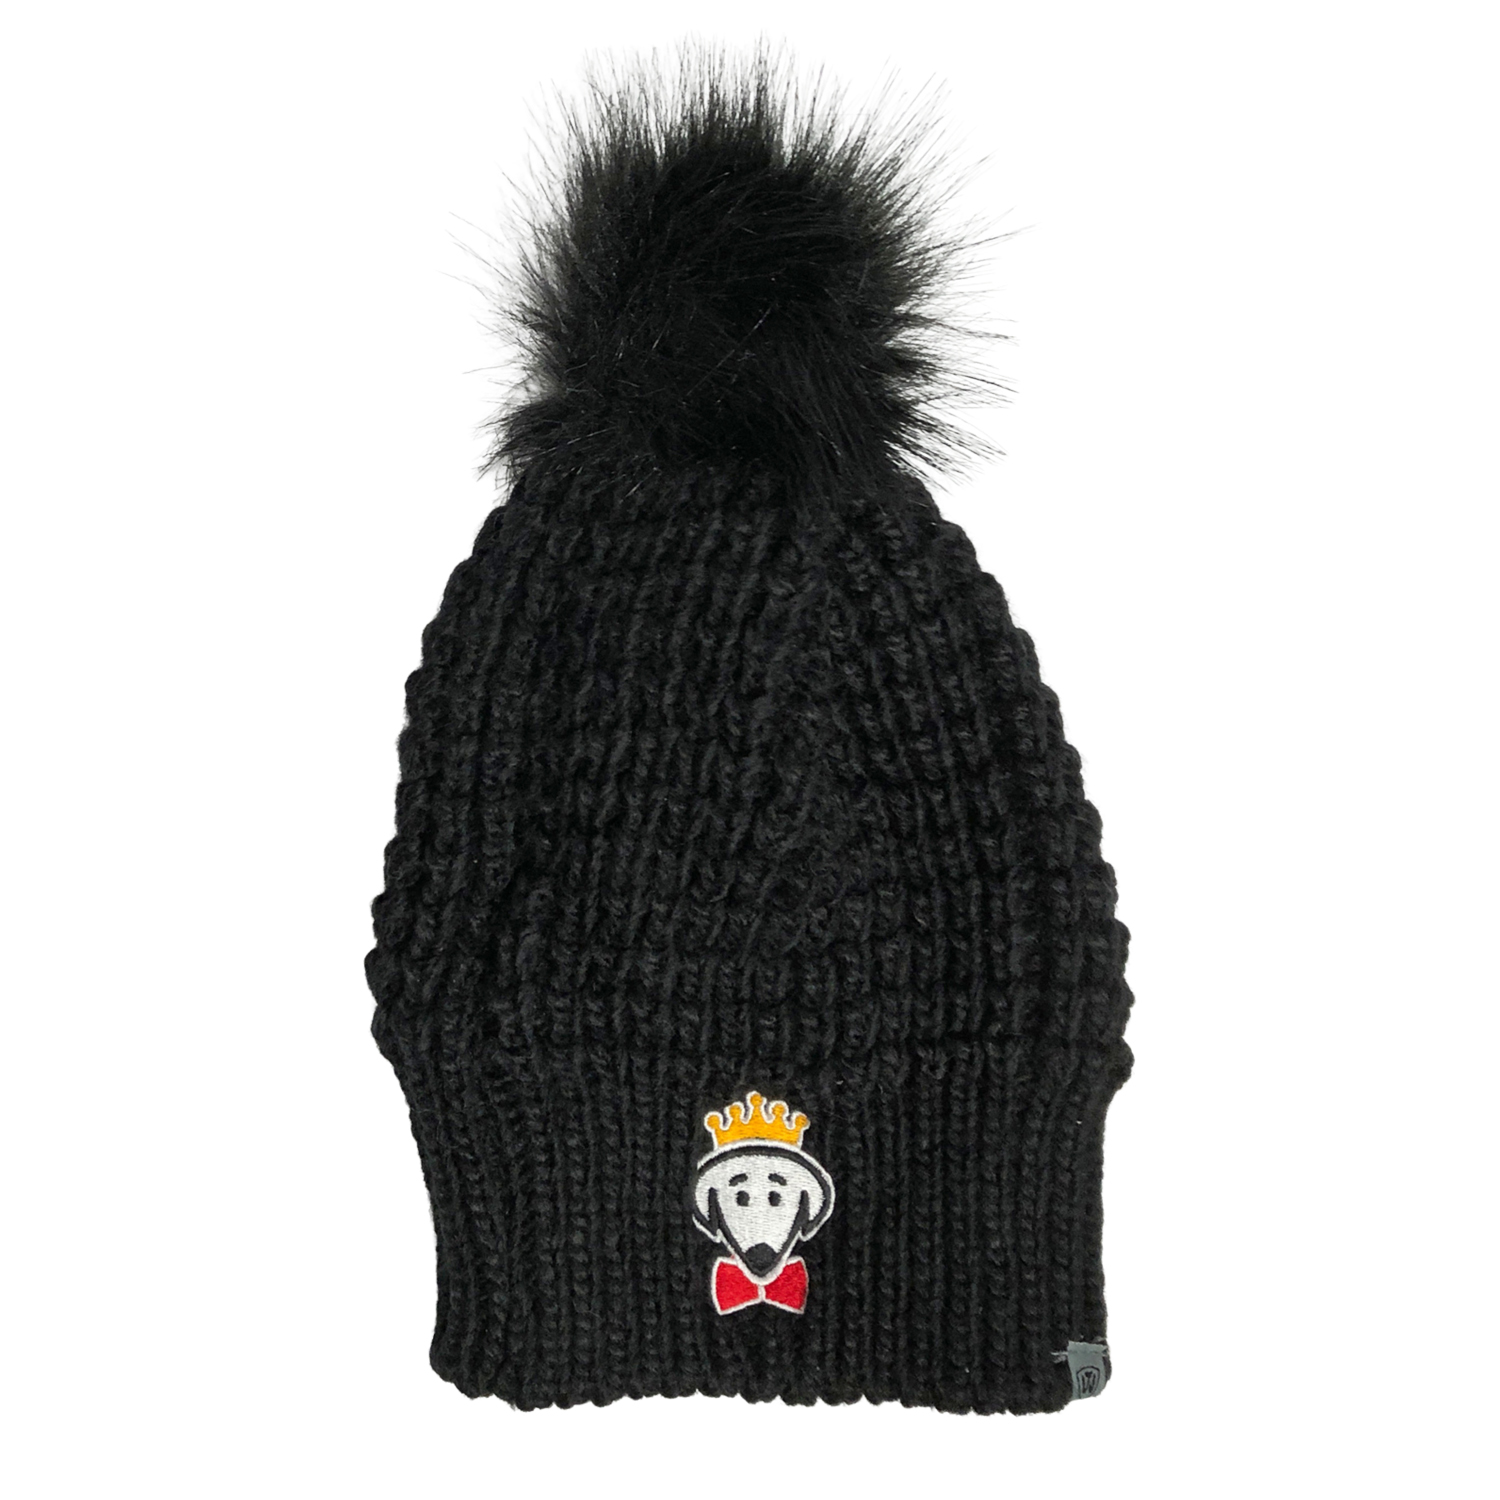 Beau Tyler - Belle winter knit hat black temp 2